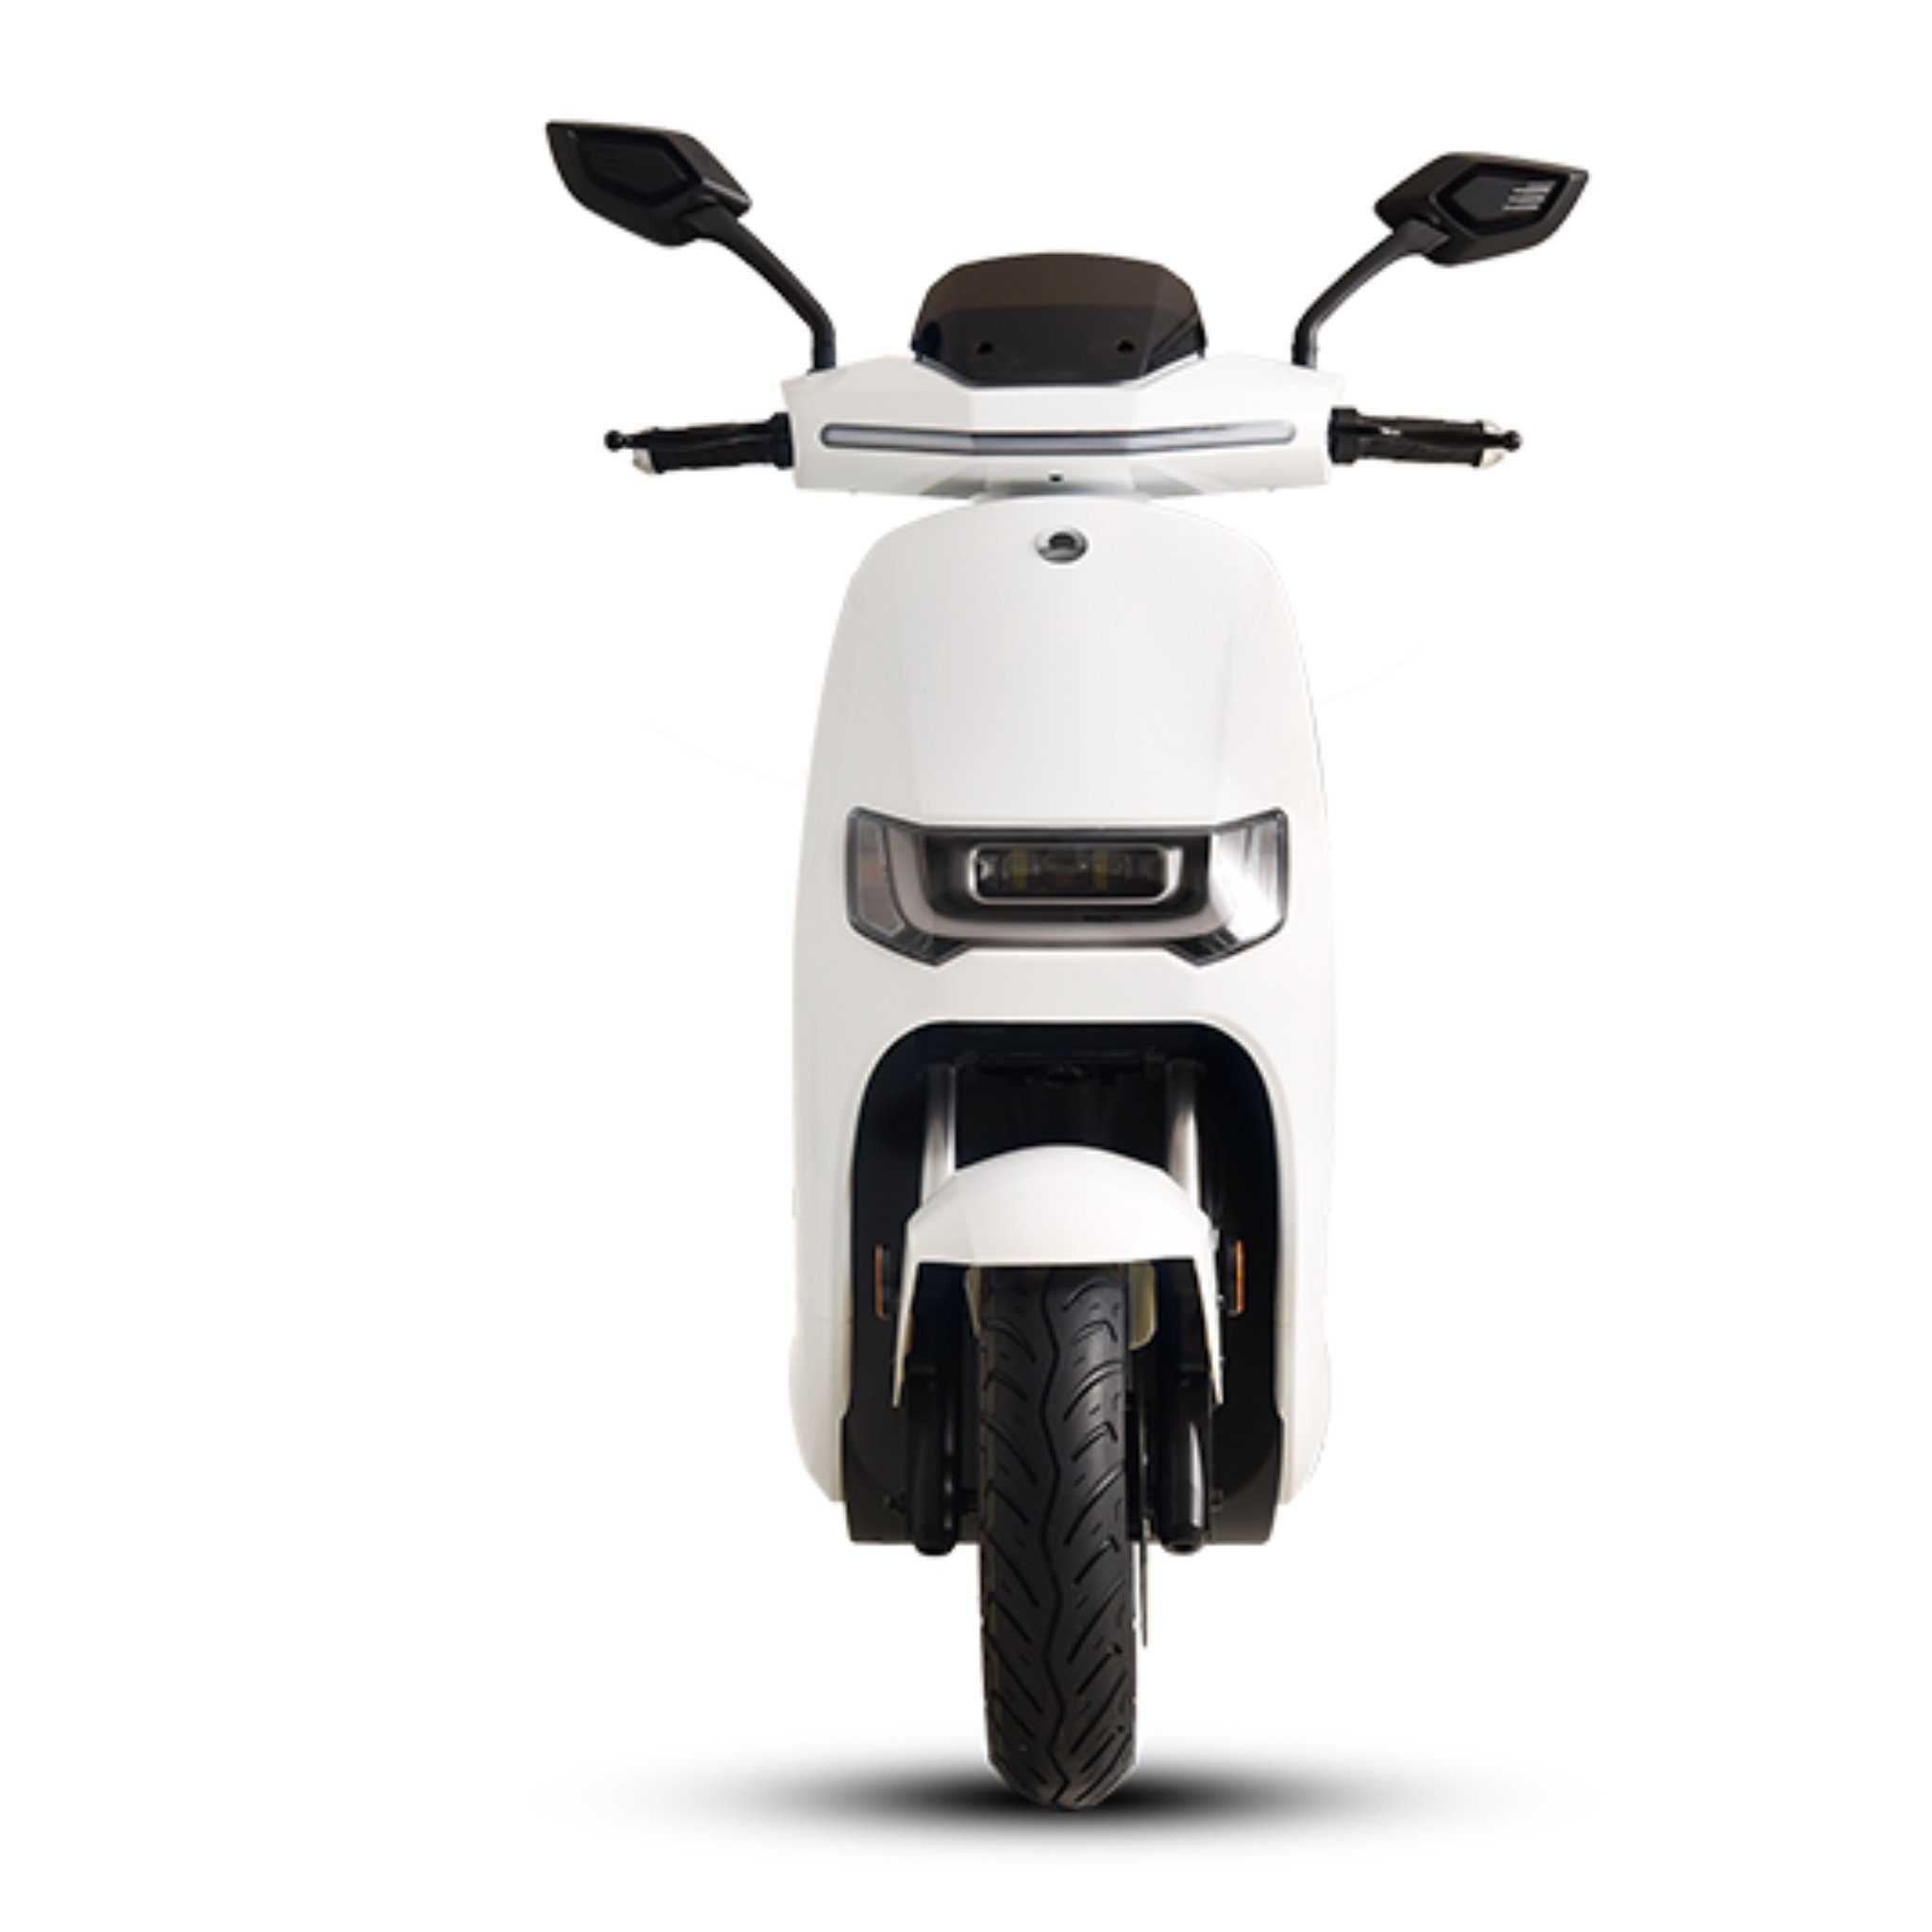 S 125cc, Weiss E-Roller Sunra W, 80 E-Motorroller 80 - Stingray Motors - Elektroroller km/h 4000,00 Robo km/h